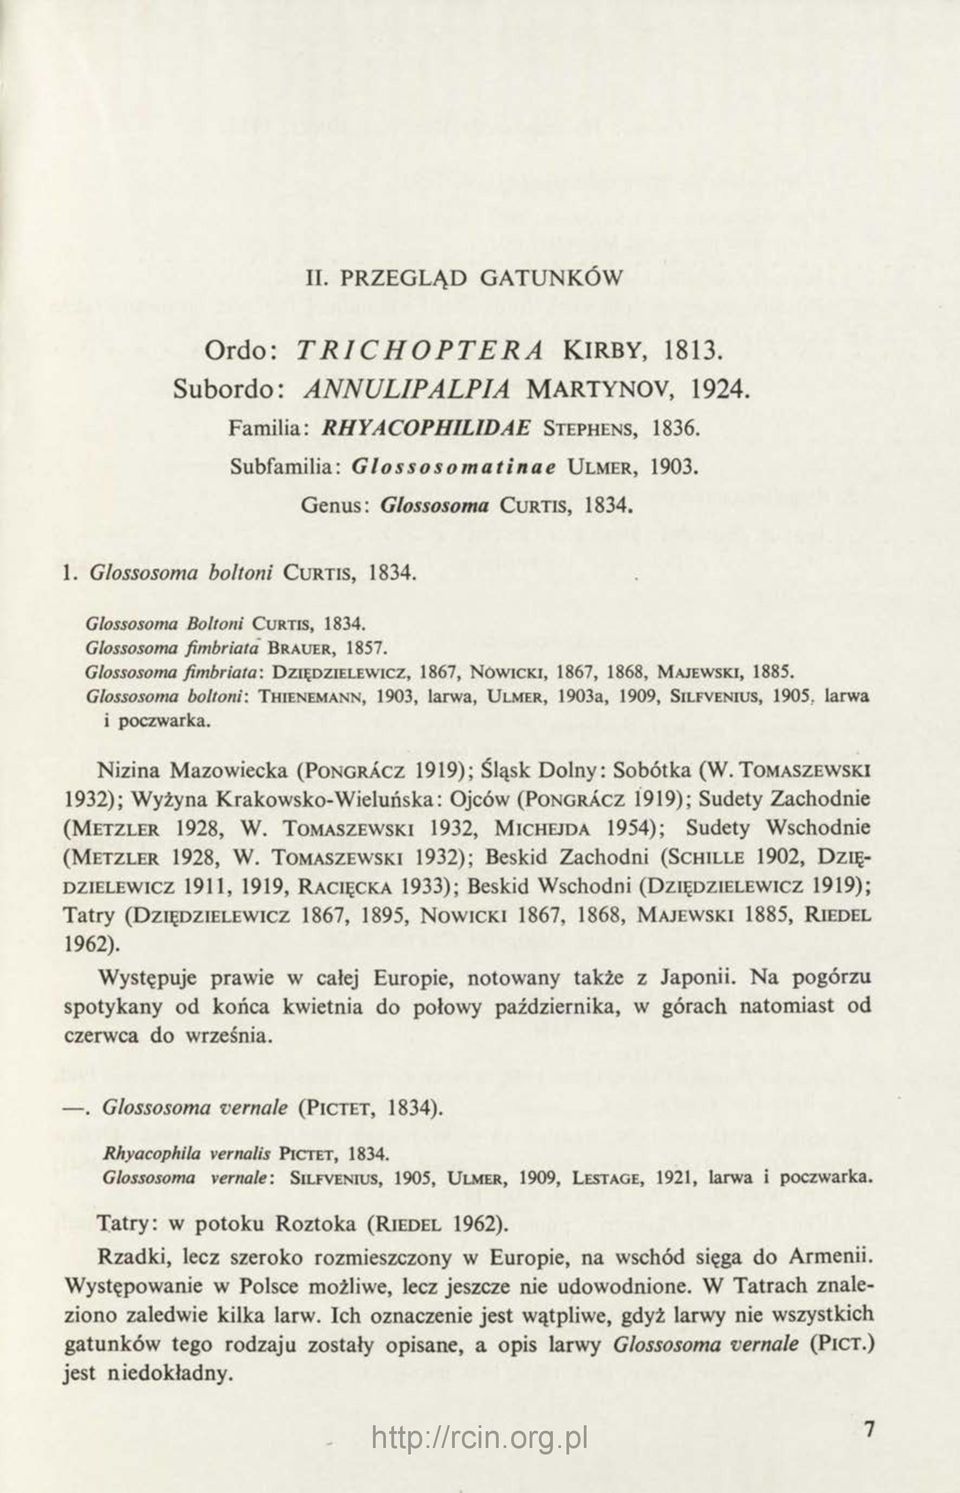 Glossosoma fim briata: D z ię d z ie l e w ic z, 1867, N ó w ic k i, 1867, 1868, M a je w s k i, 1885.